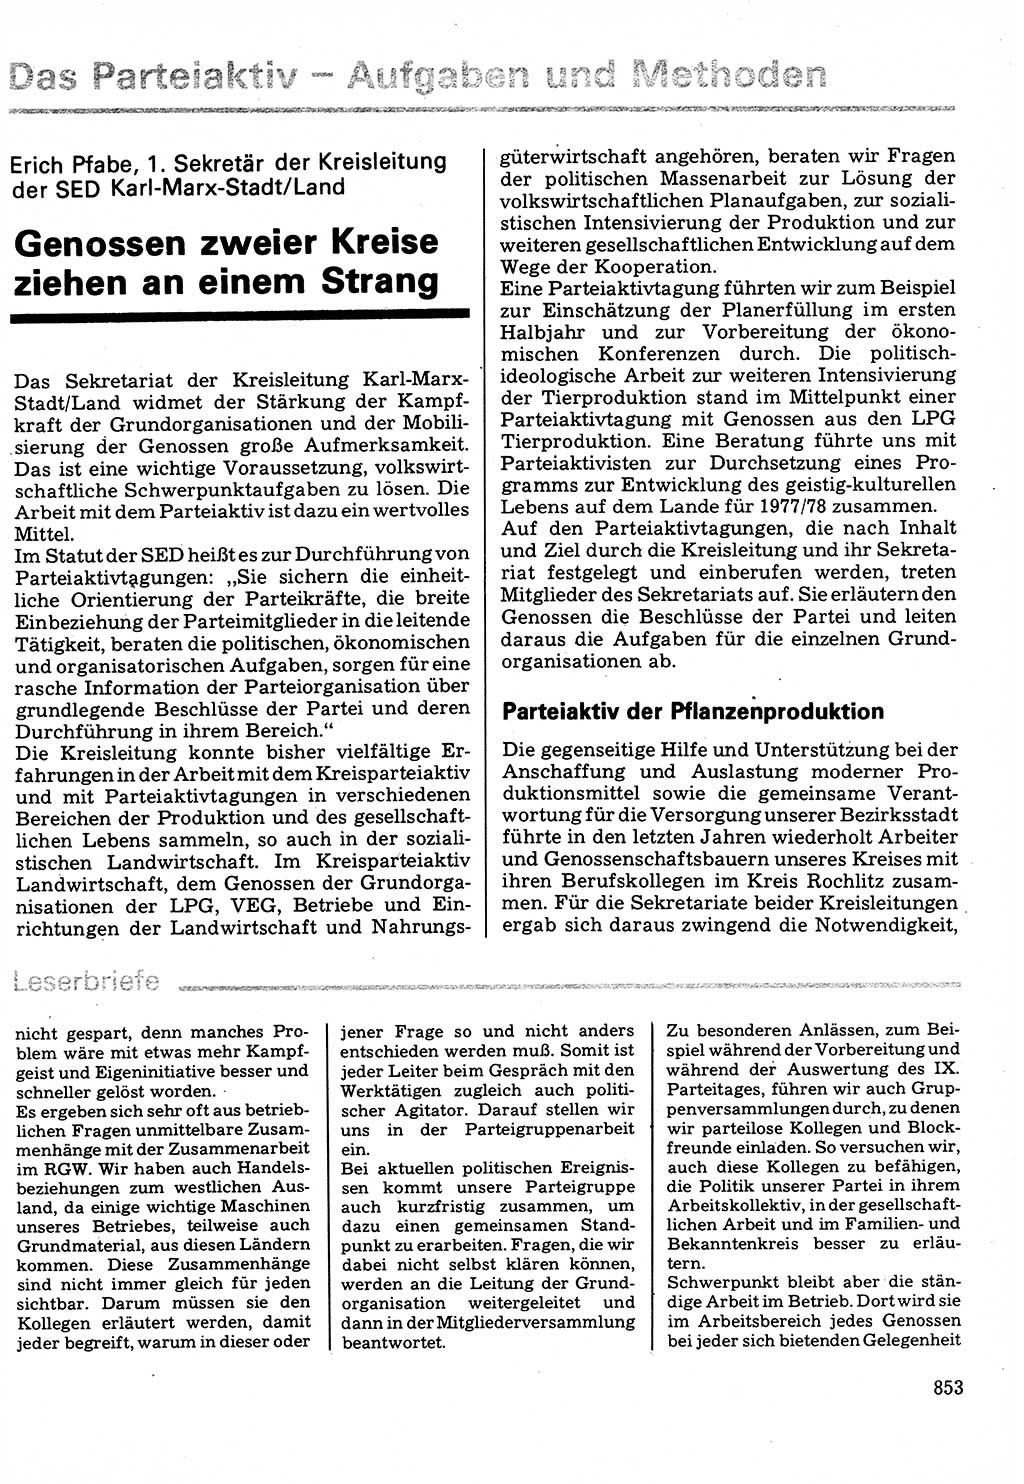 Neuer Weg (NW), Organ des Zentralkomitees (ZK) der SED (Sozialistische Einheitspartei Deutschlands) für Fragen des Parteilebens, 32. Jahrgang [Deutsche Demokratische Republik (DDR)] 1977, Seite 853 (NW ZK SED DDR 1977, S. 853)